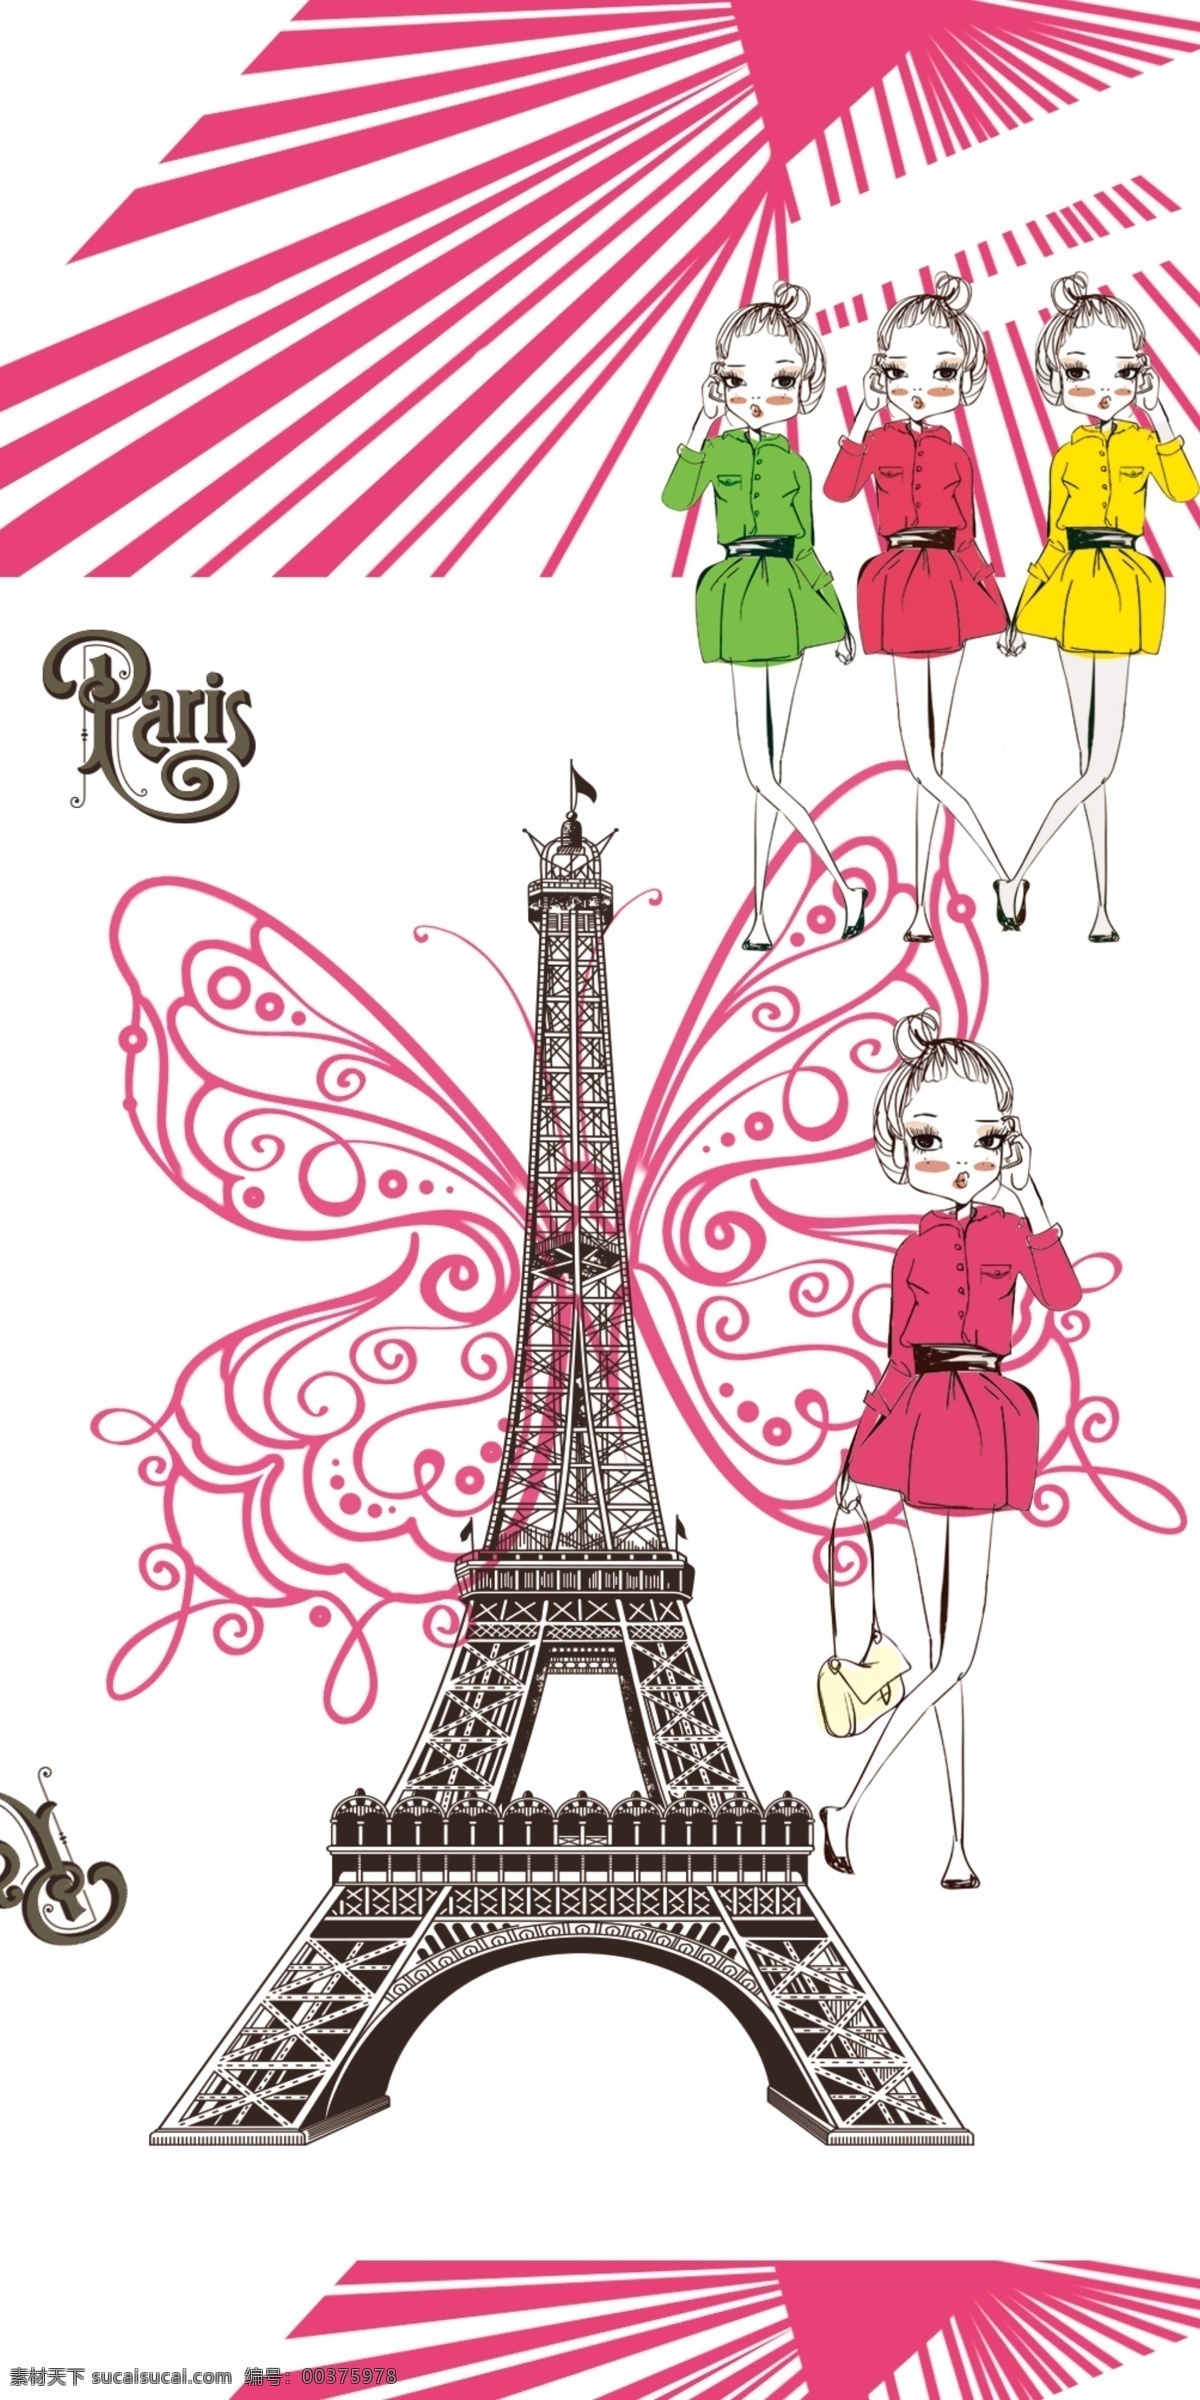 巴黎铁塔 手机壳 图案 女孩 蝴蝶 铁塔 标志 建筑物 图案设计 文化艺术